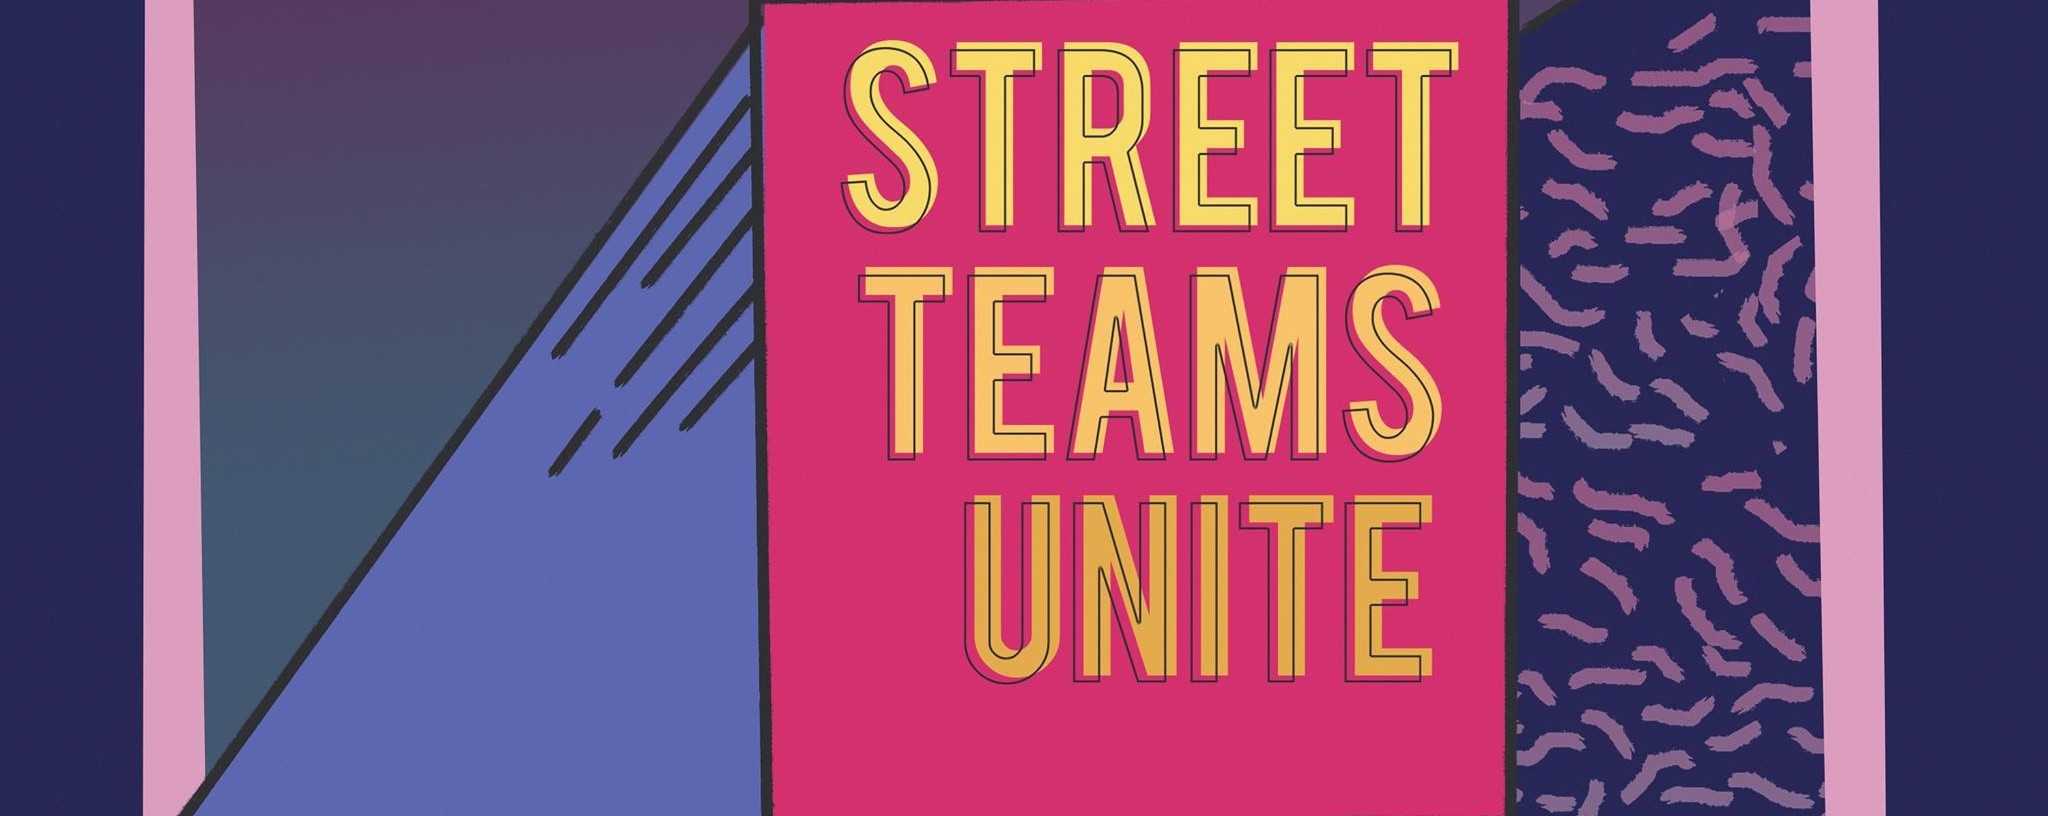 Street Teams Unite